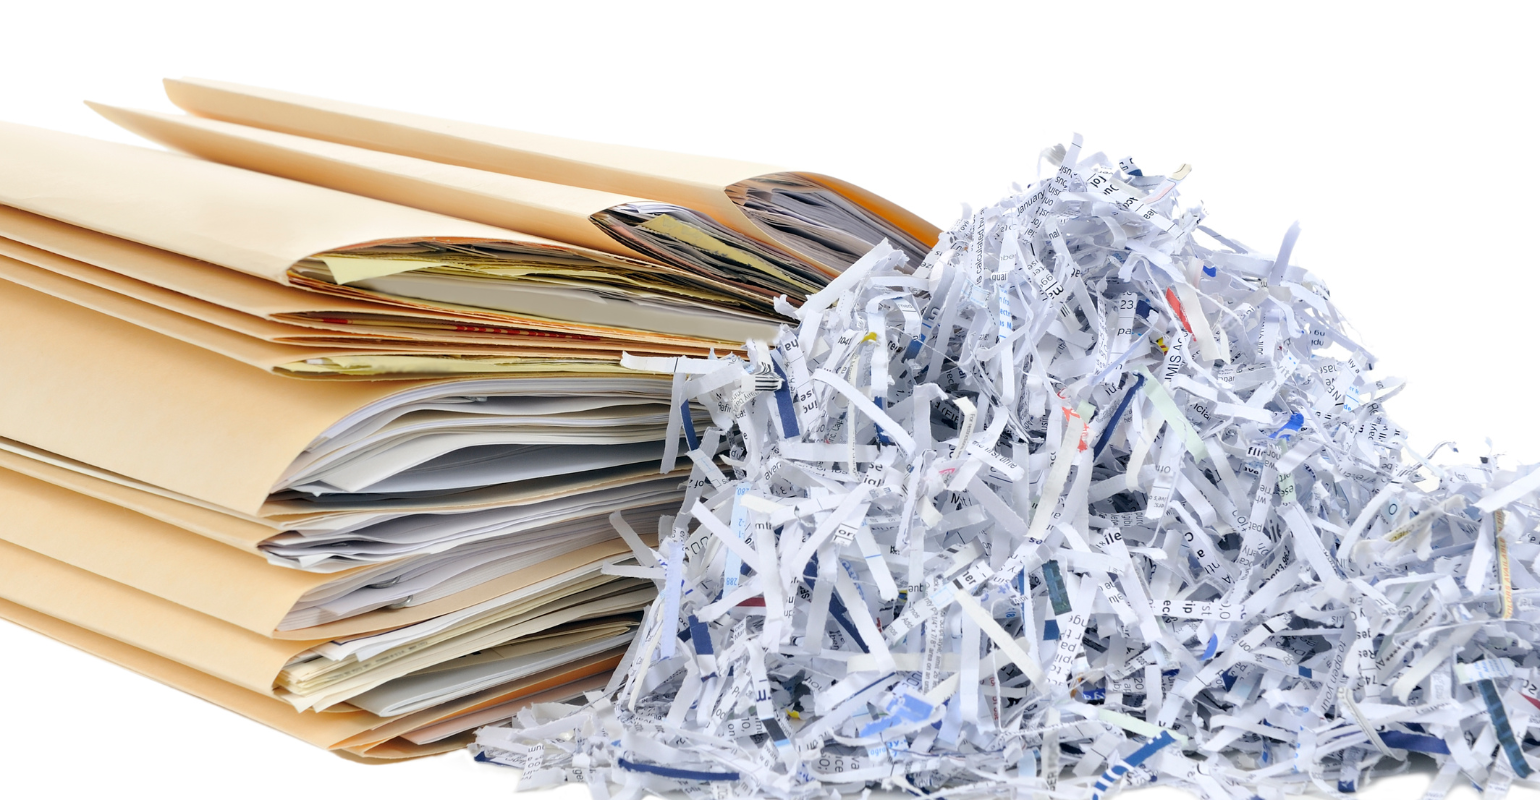 Document shredder